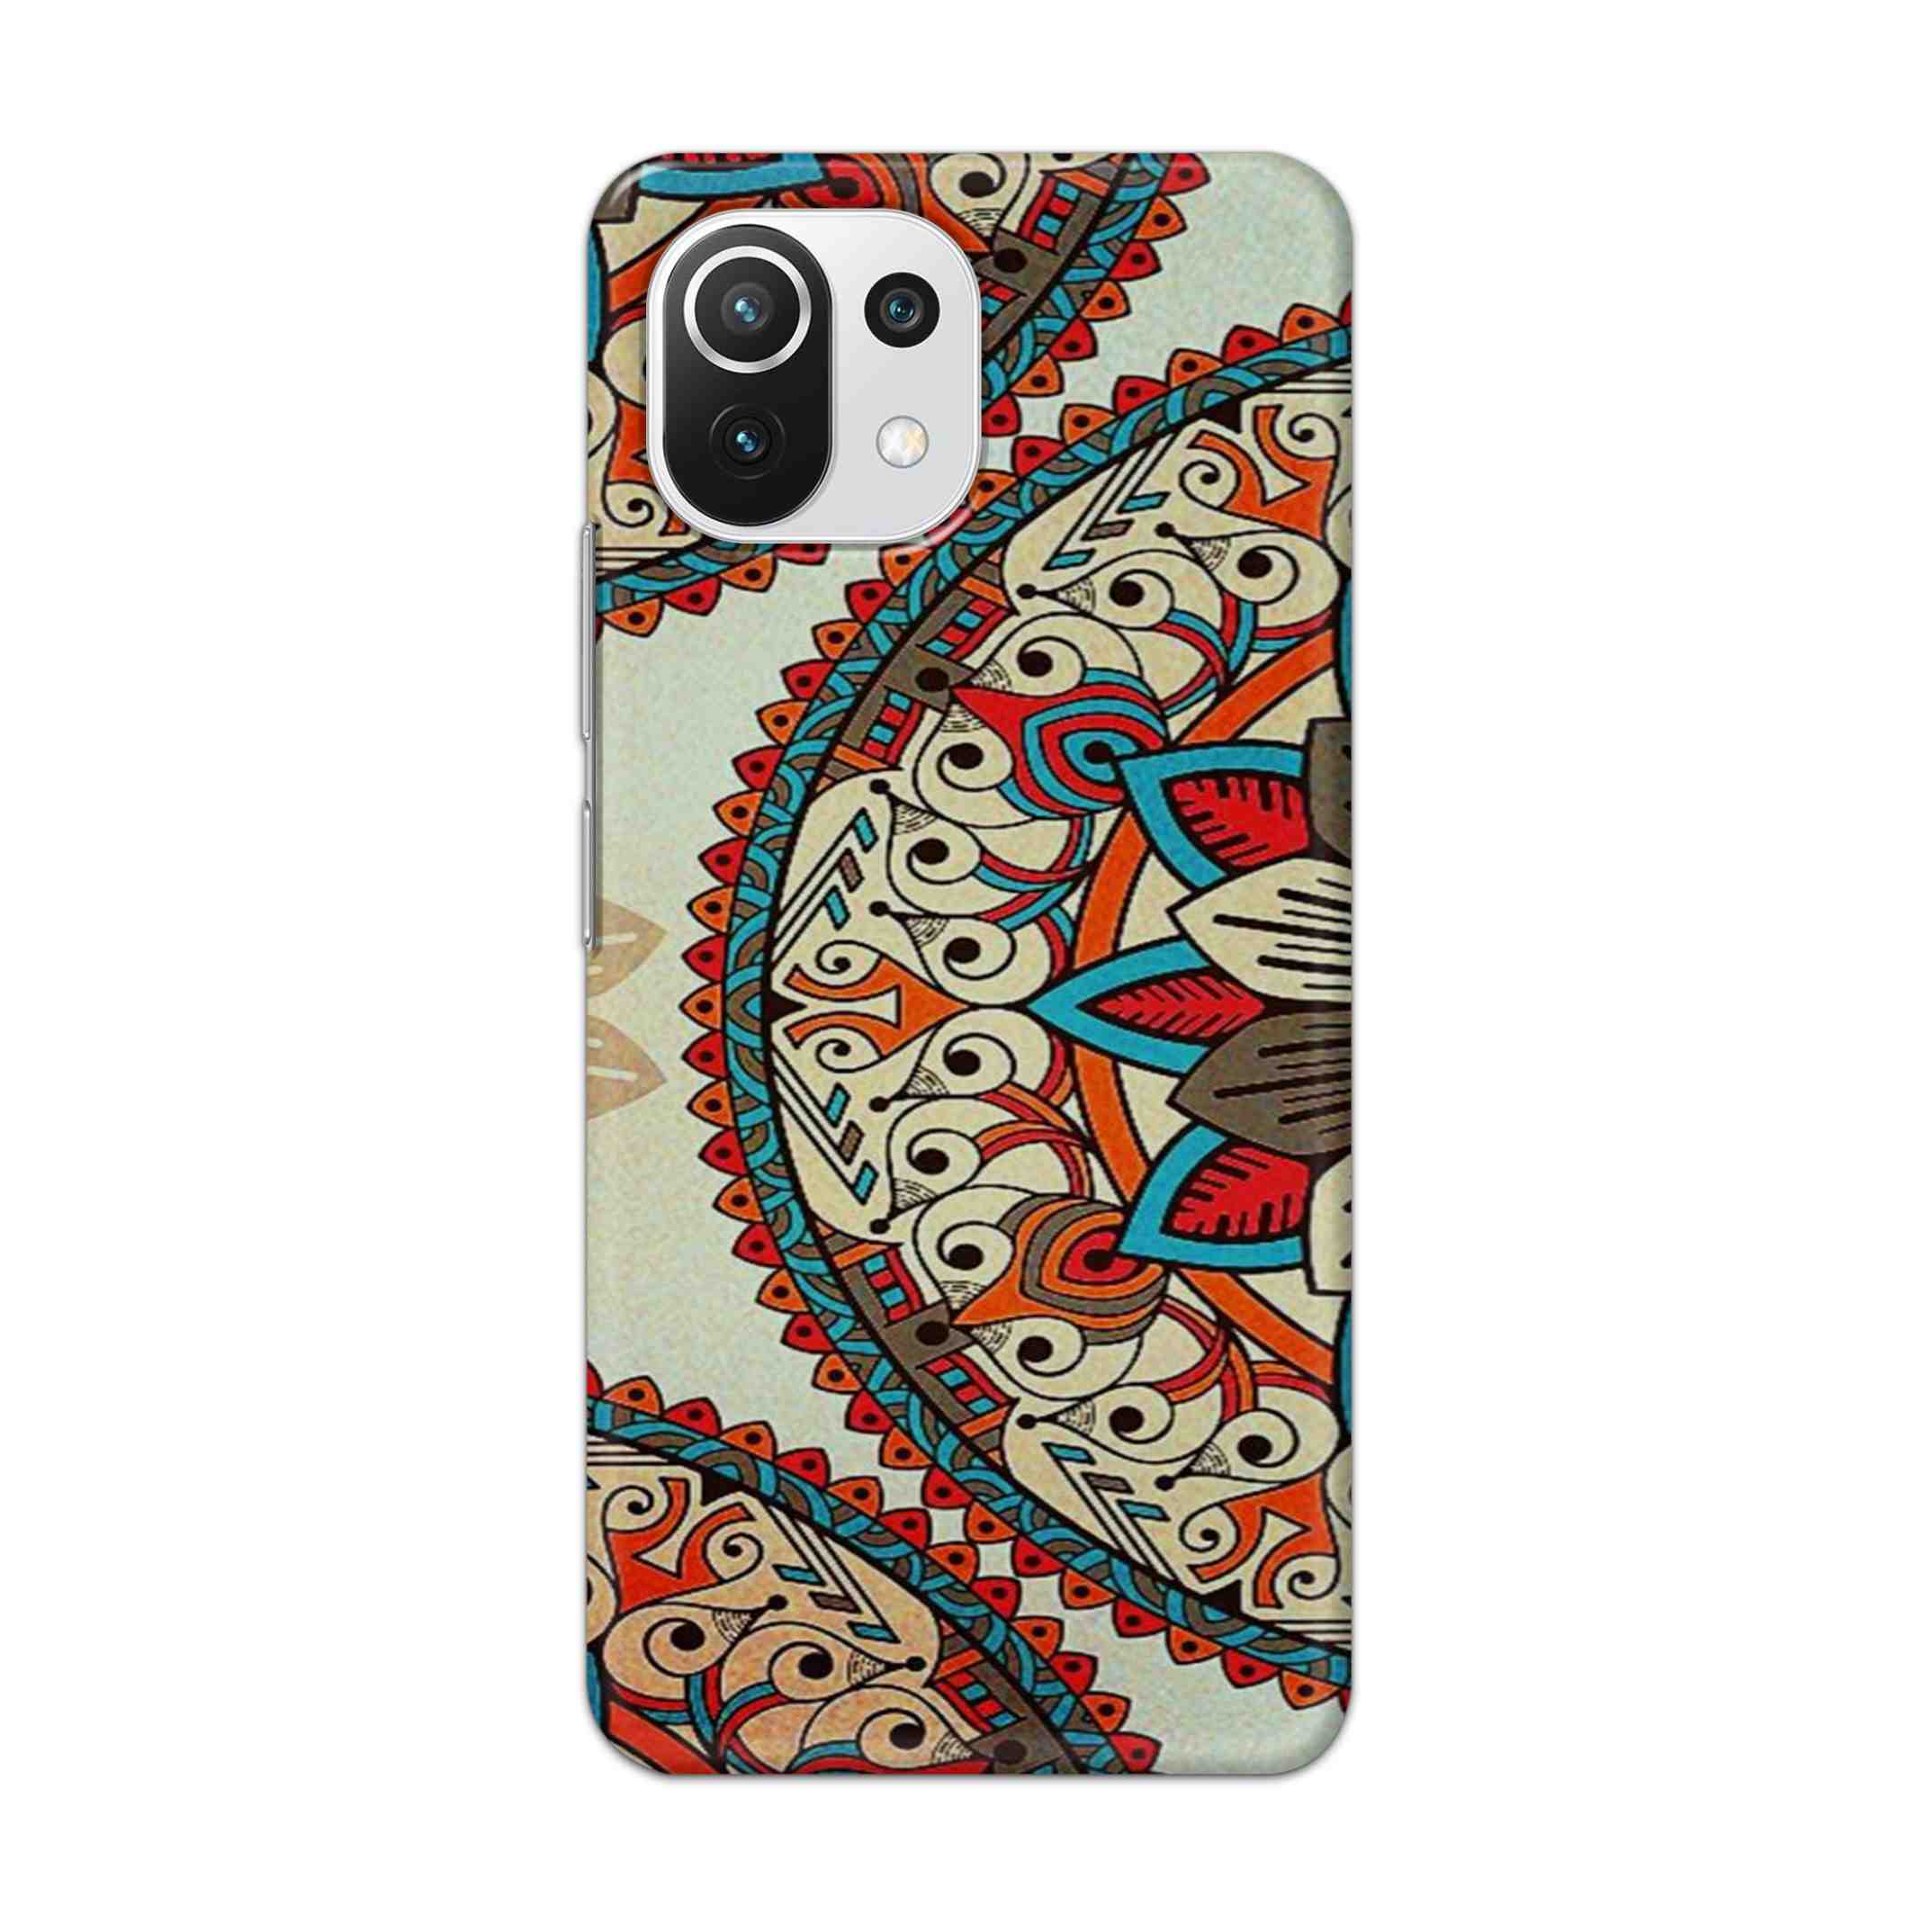 Buy Aztec Mandalas Hard Back Mobile Phone Case Cover For Mi 11 Lite NE 5G Online